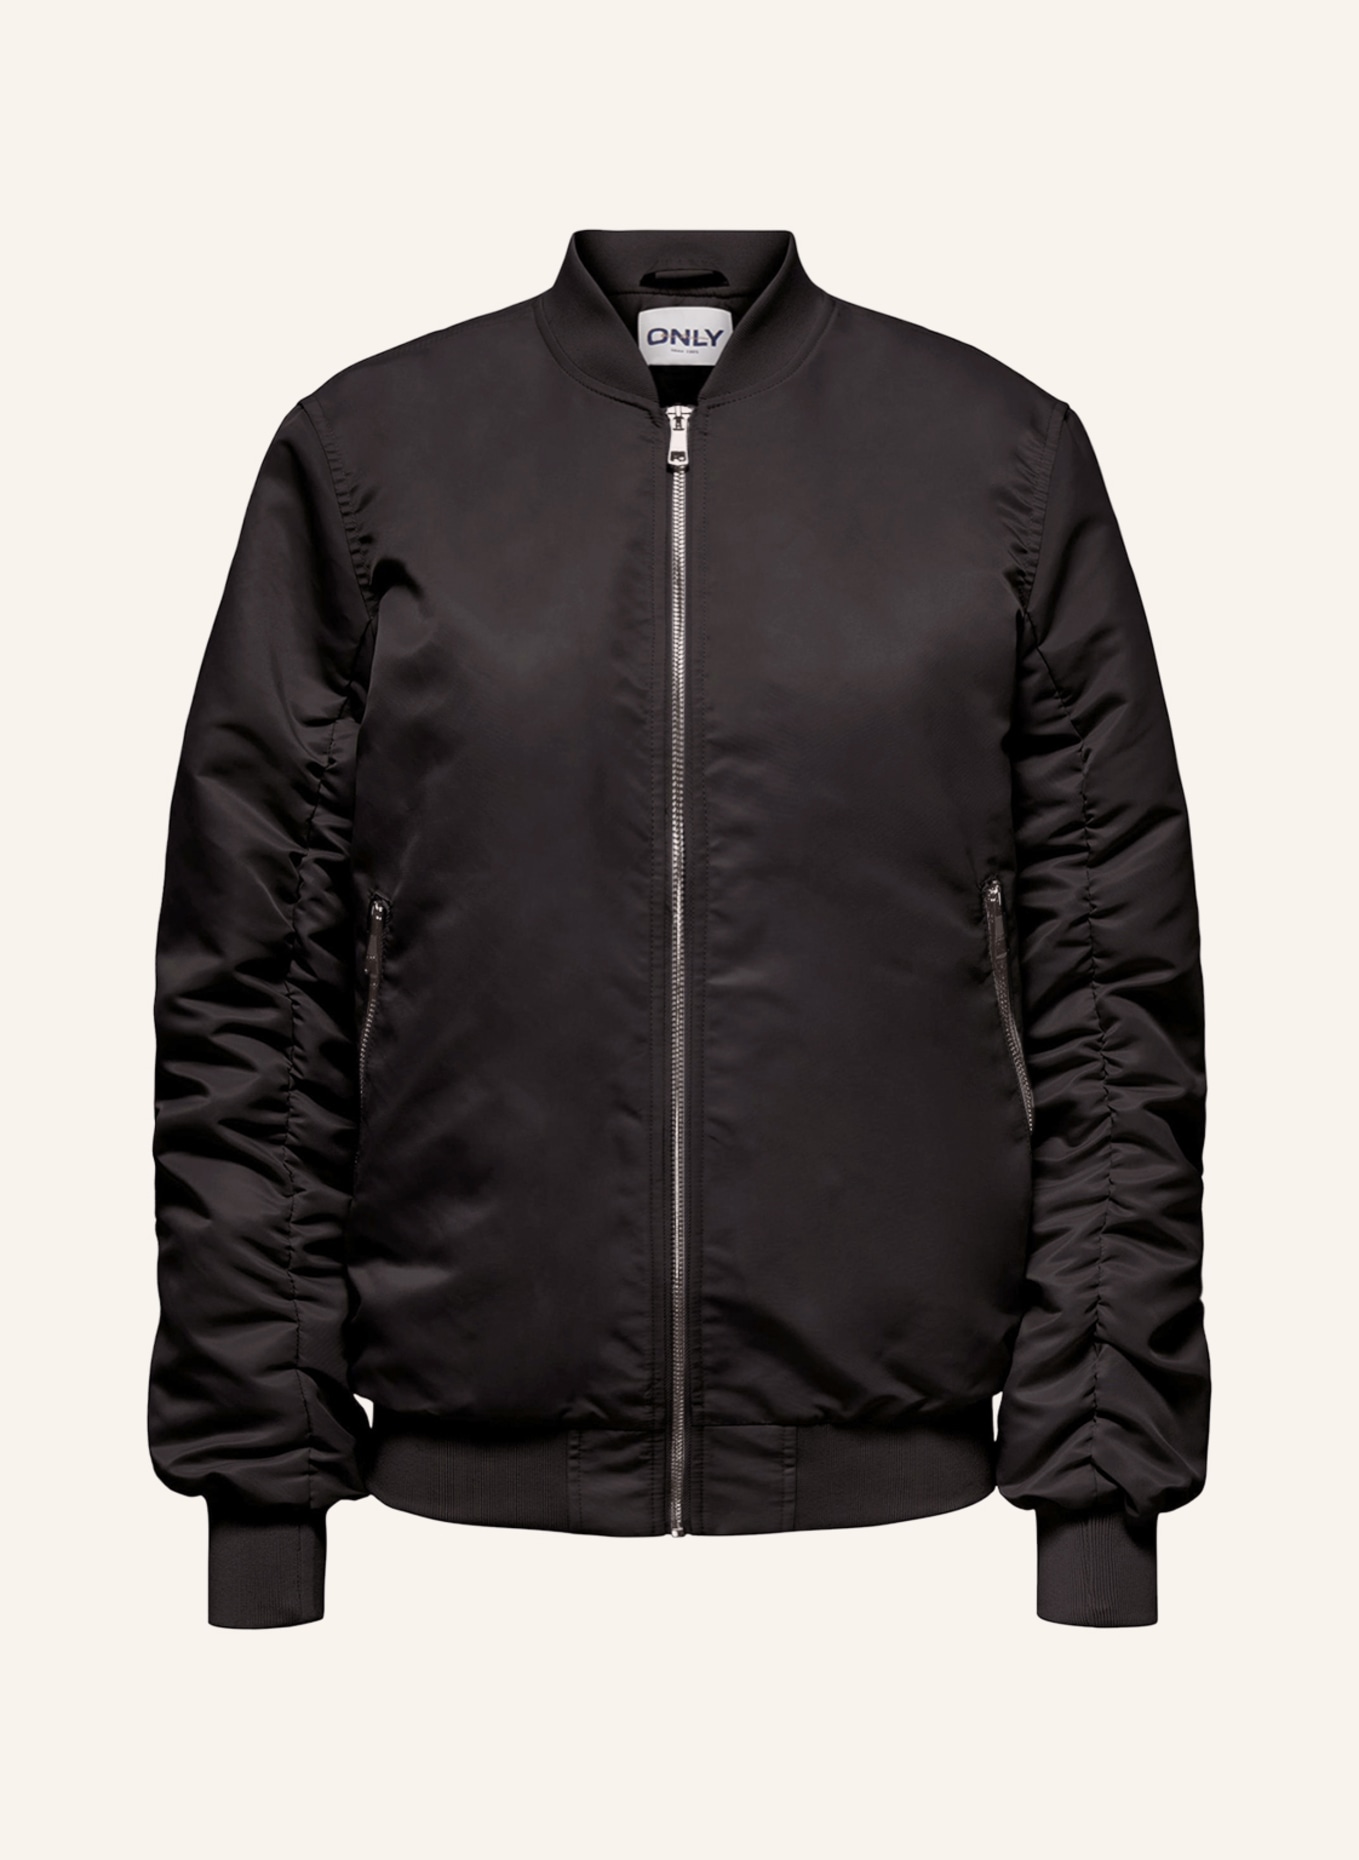 ONLY Bomber jacket, Color: BLACK (Image 1)